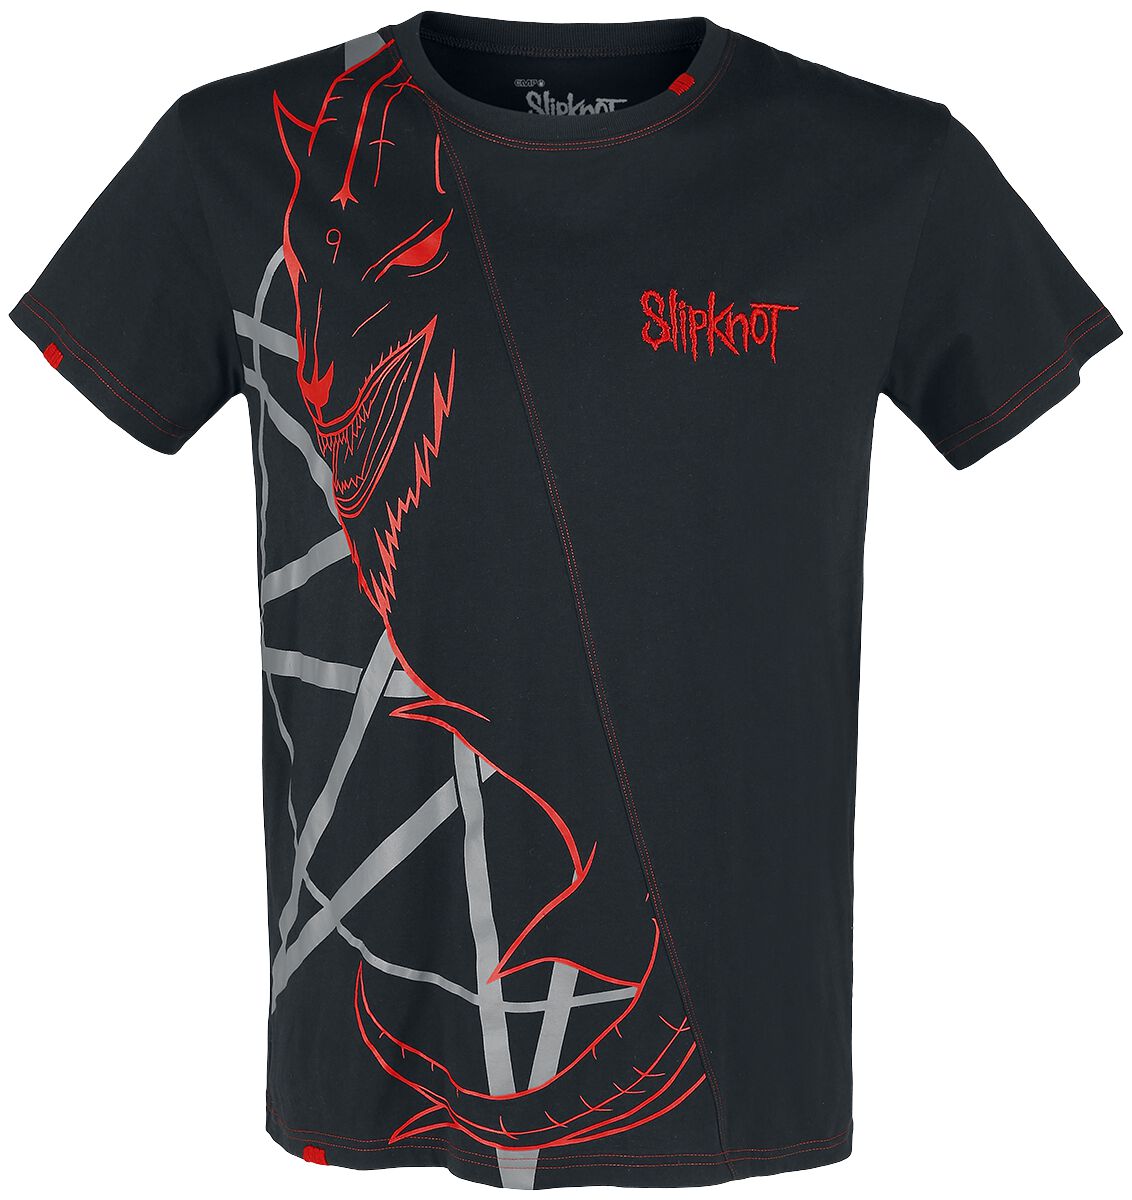 Slipknot T-Shirt - EMP Signature Collection - S bis 5XL - für Männer - Größe S - schwarz/rot  - EMP exklusives Merchandise!